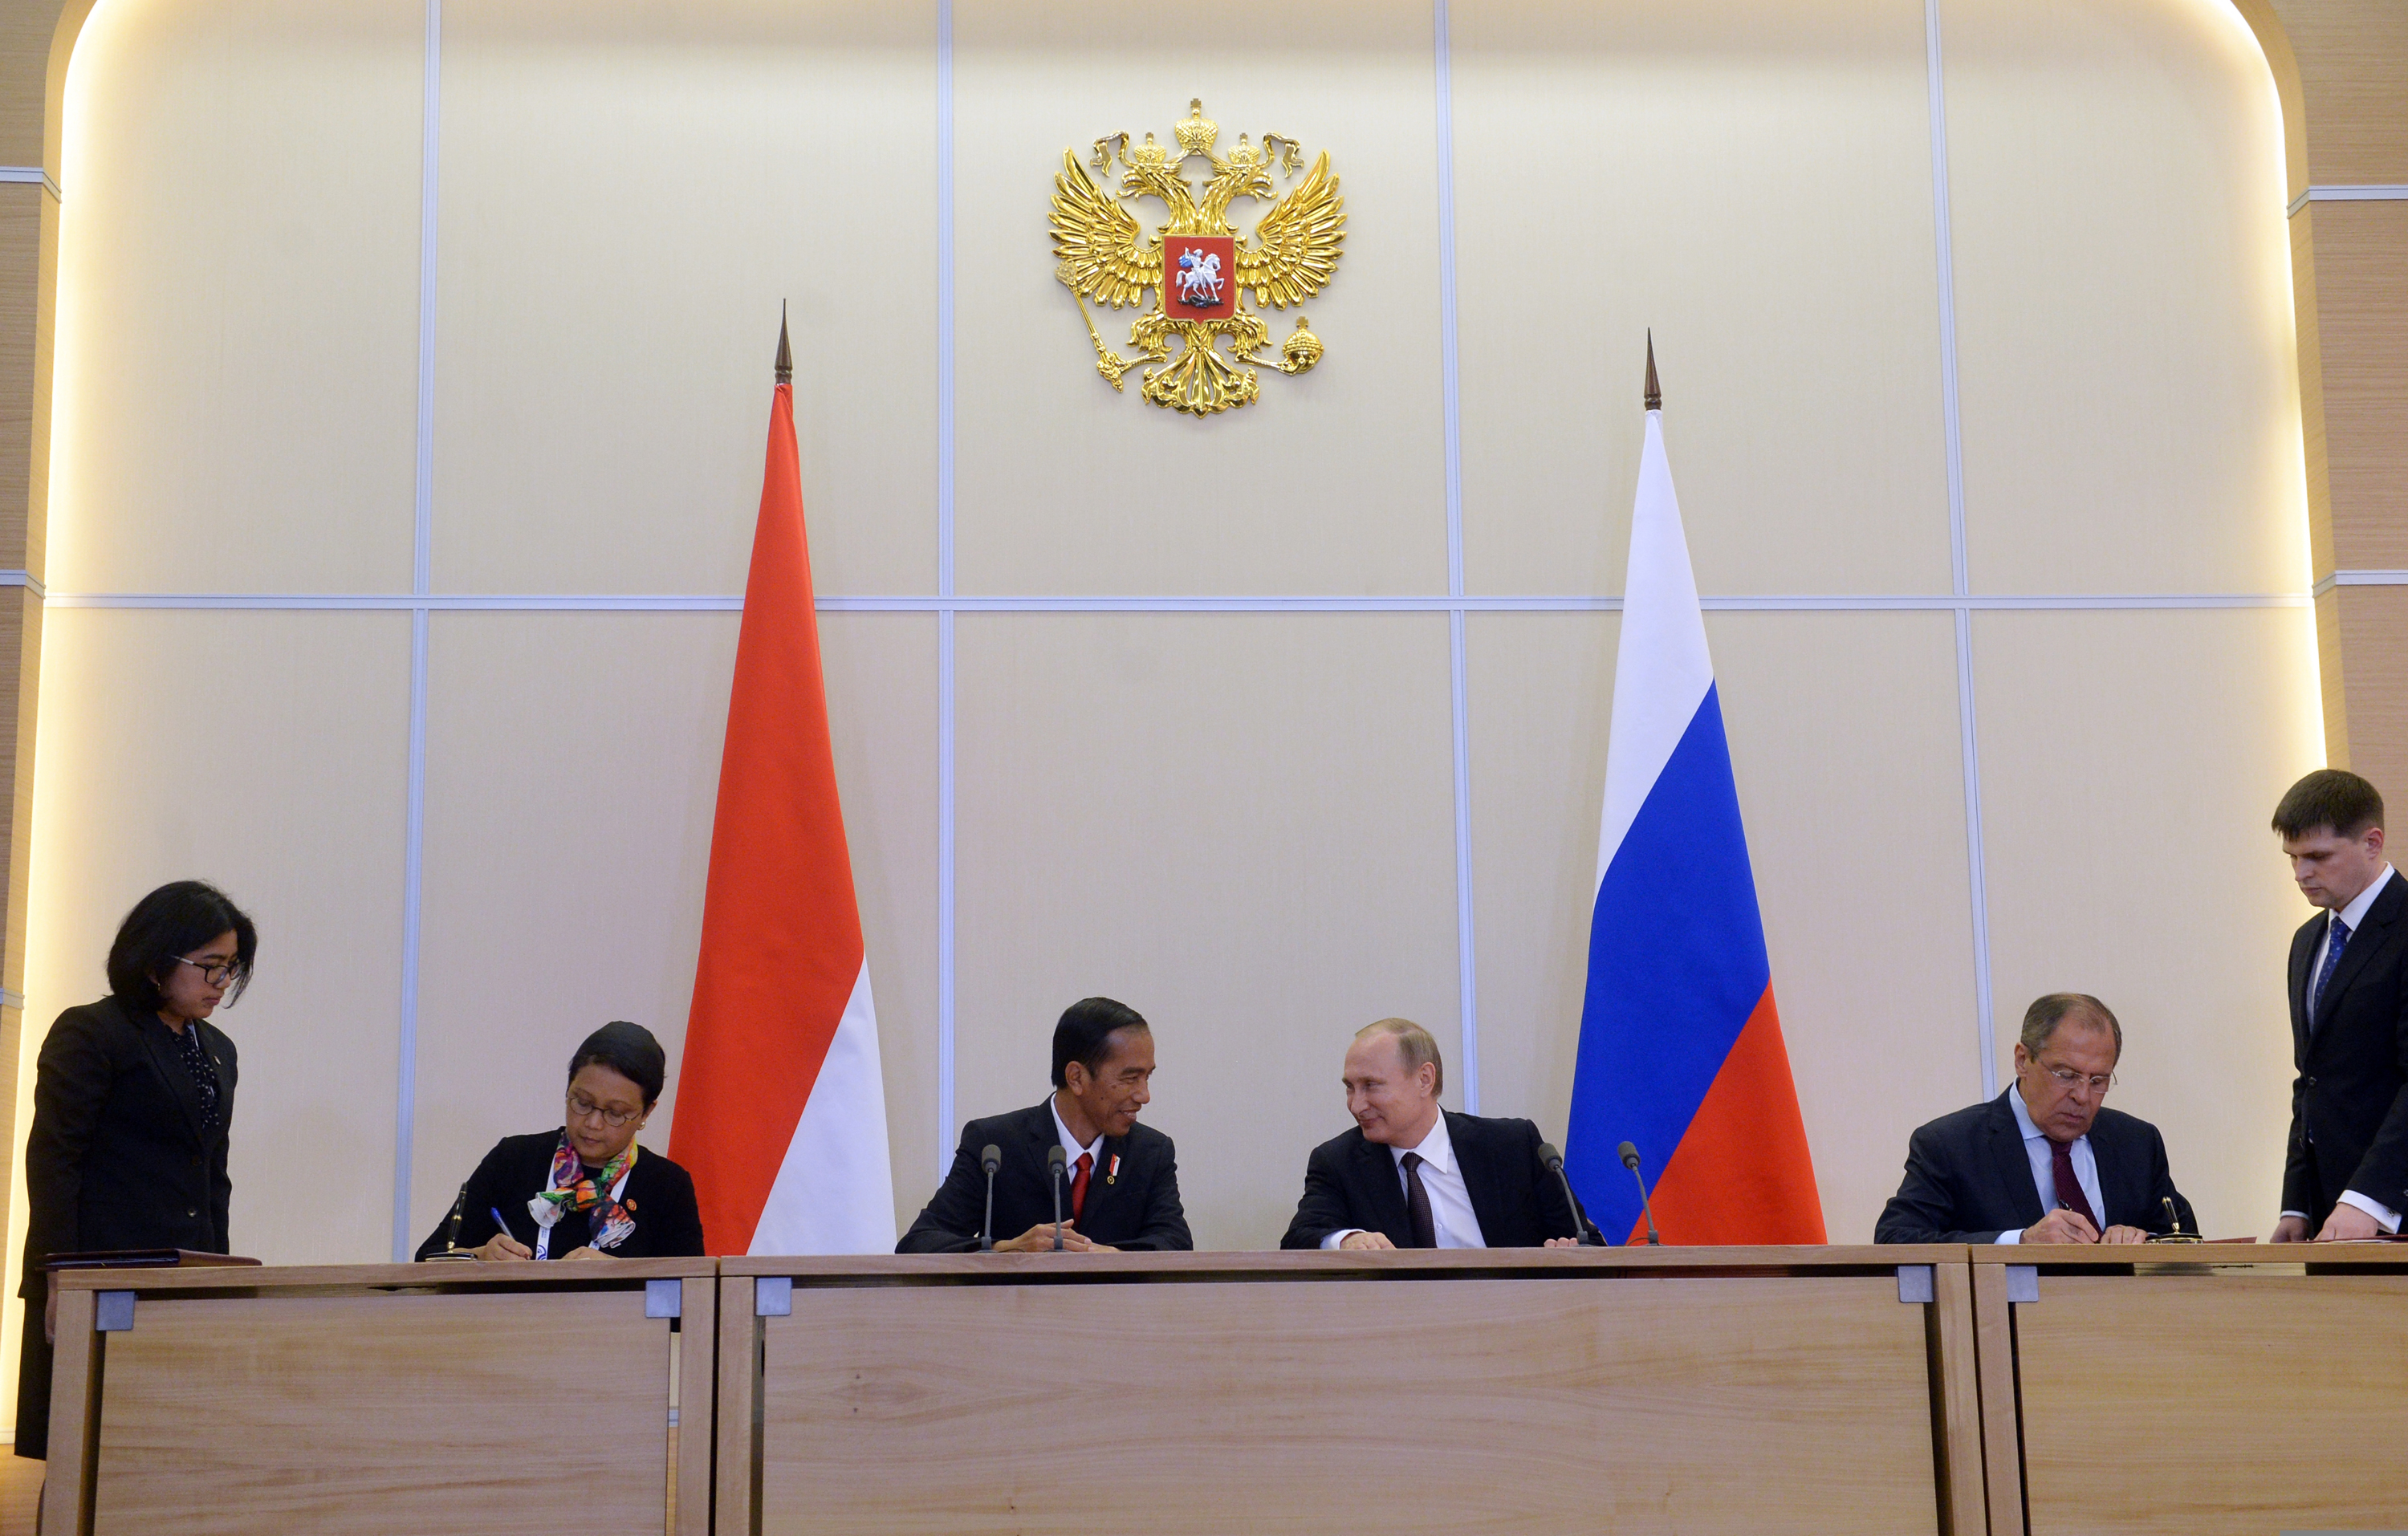 Dari kiri ke kanan: Menteri Luar Negeri RI Retno Marsudi, Presiden RI Joko Widodo, Presiden Rusia Vladimir Putin, dan Menteri Luar Negeri Rusia Sergey Lavrov.